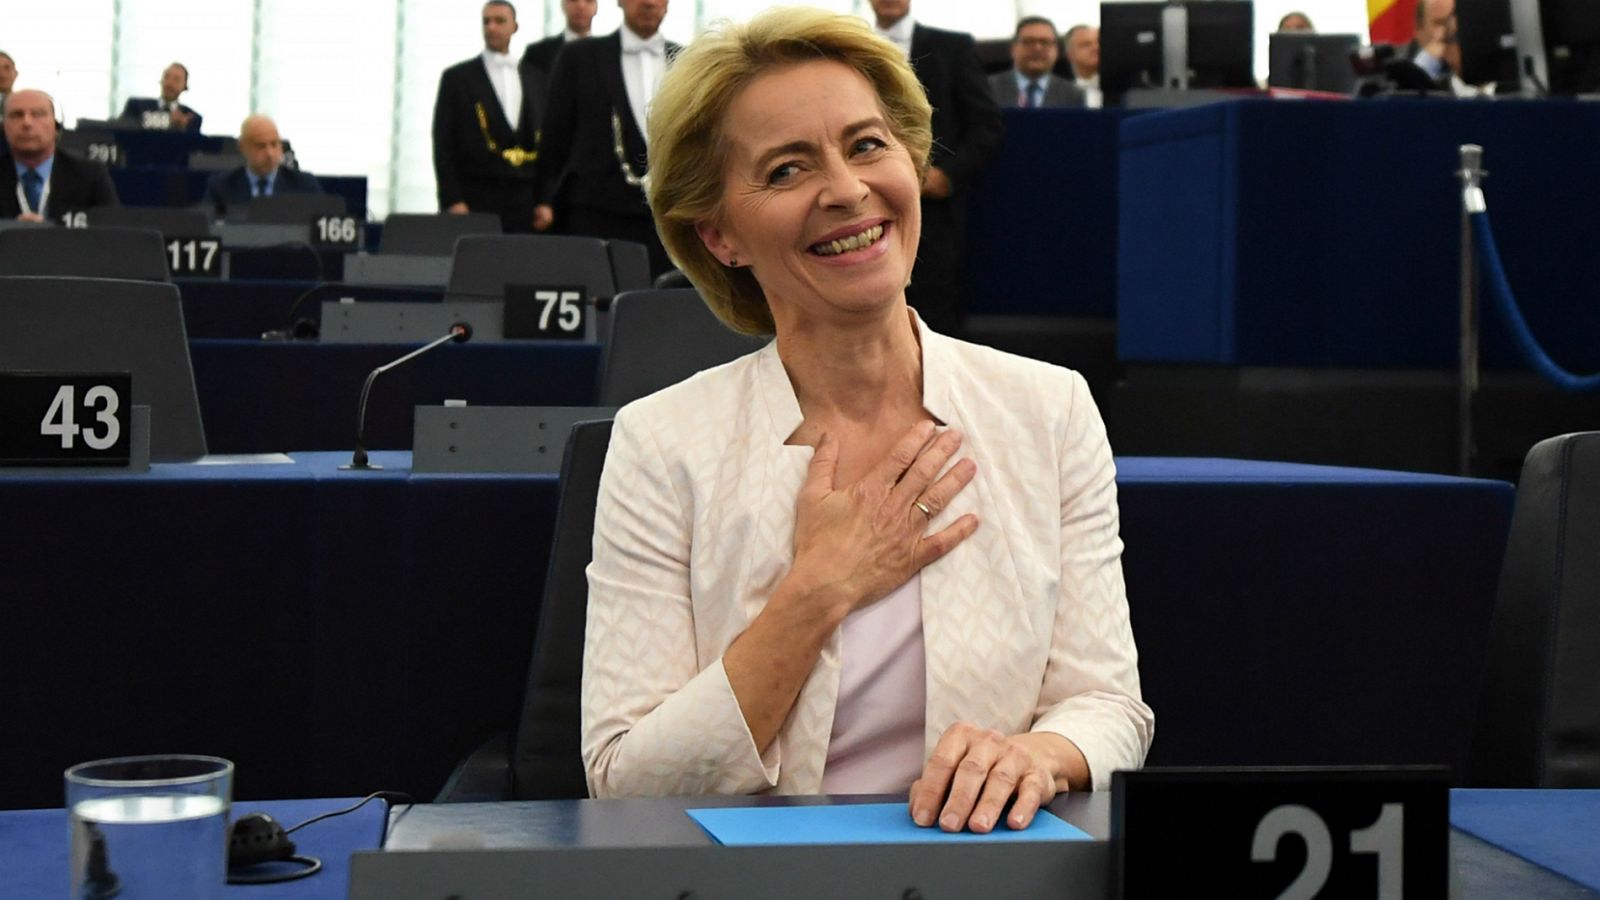 Comisión Europea | Ursula von der Leyen, elegida presidenta de la Comisión Europea - RTVE.es